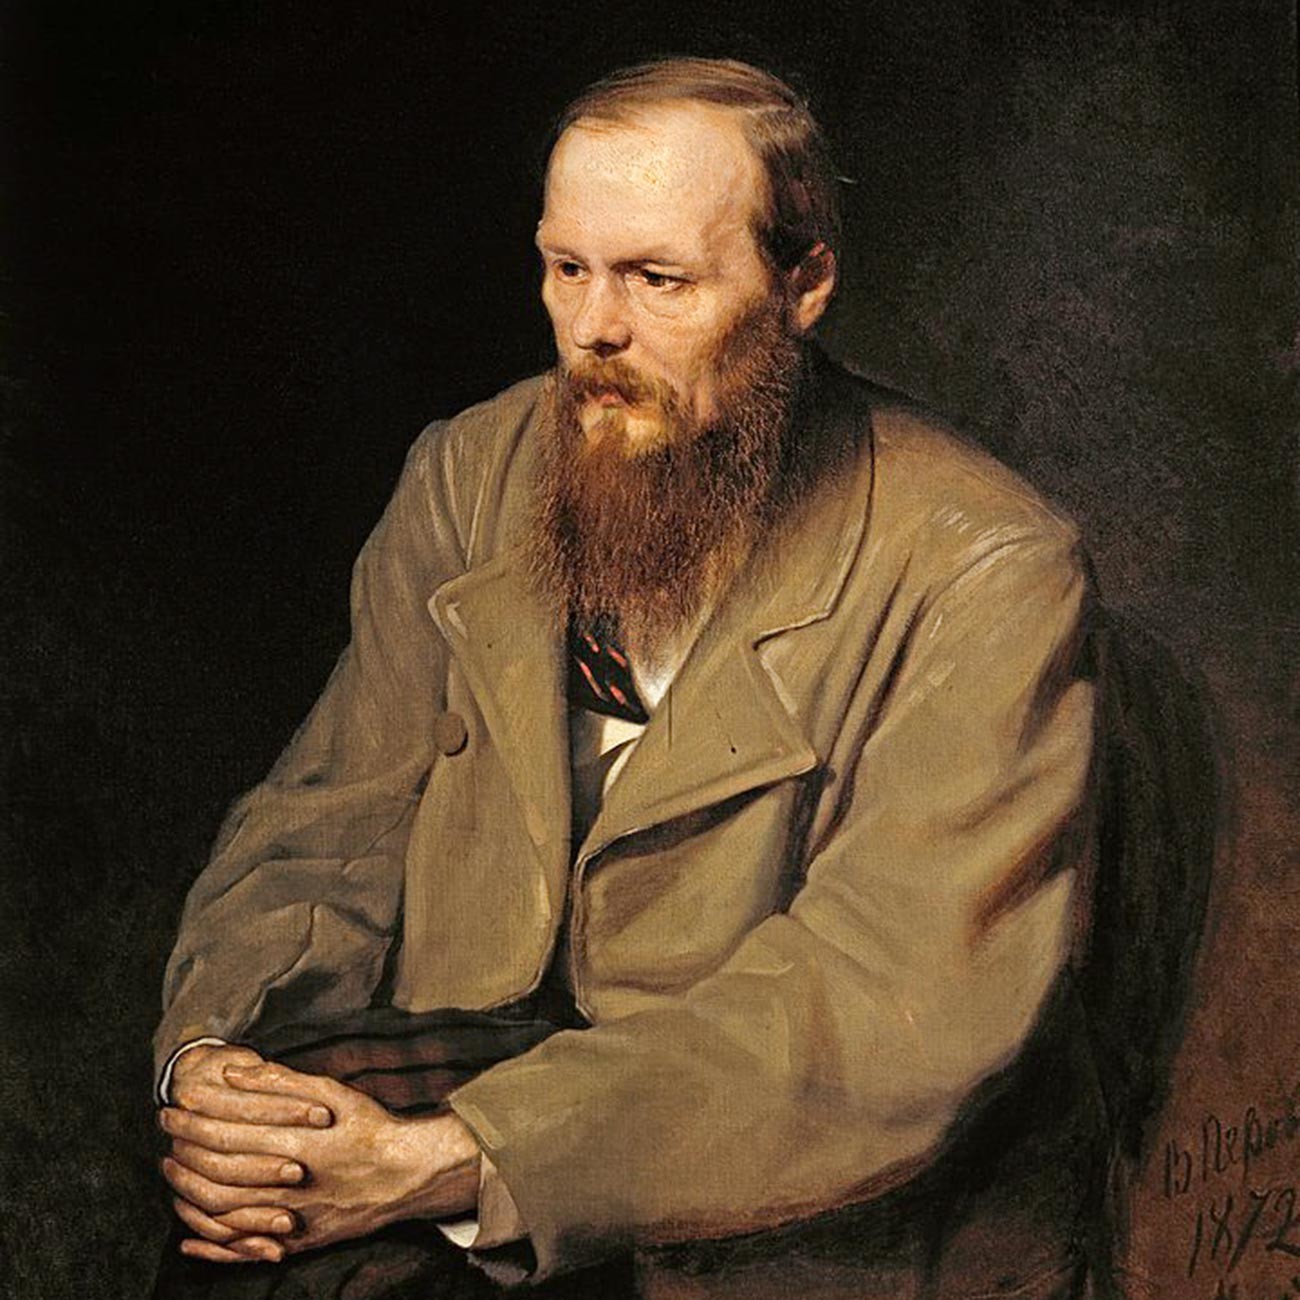 Ein Porträt von Fjodor Dostojewski.